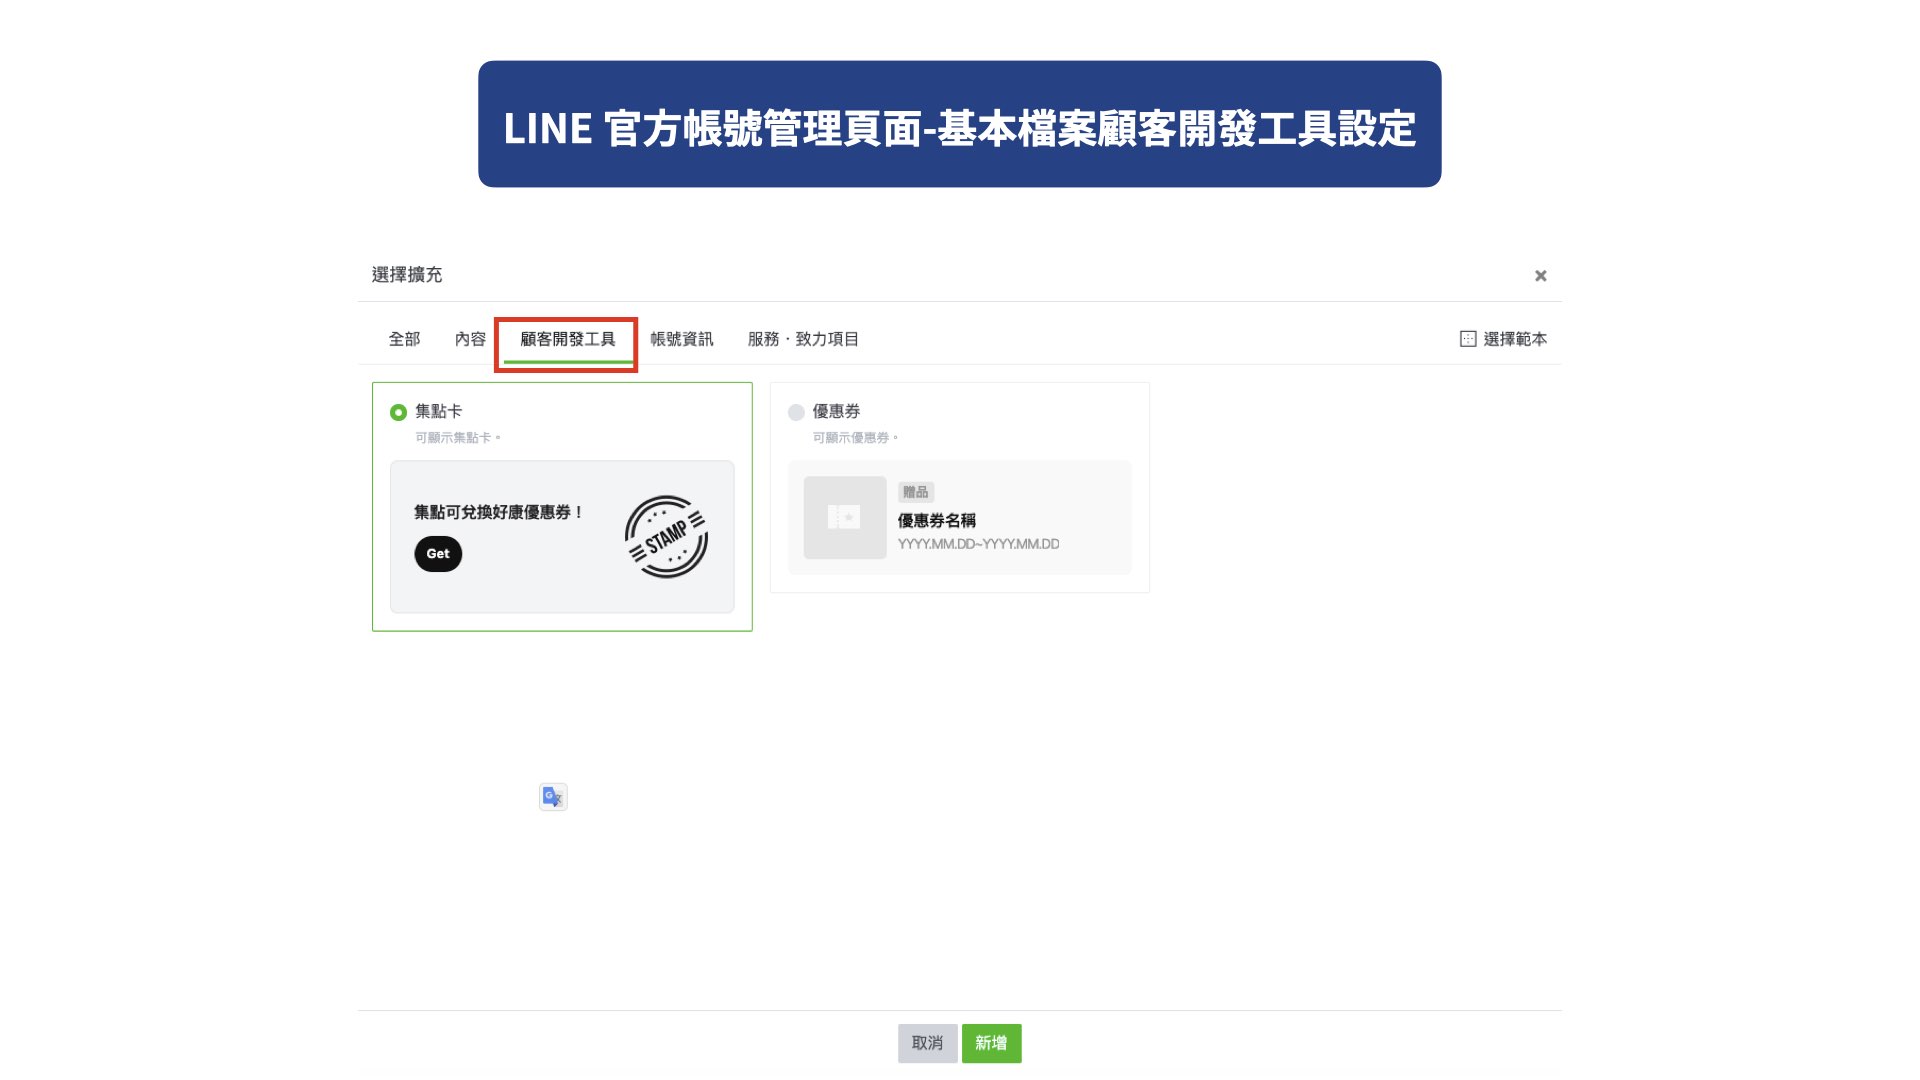 LINE 官方帳號管理頁面-基本檔案顧客開發工具設定